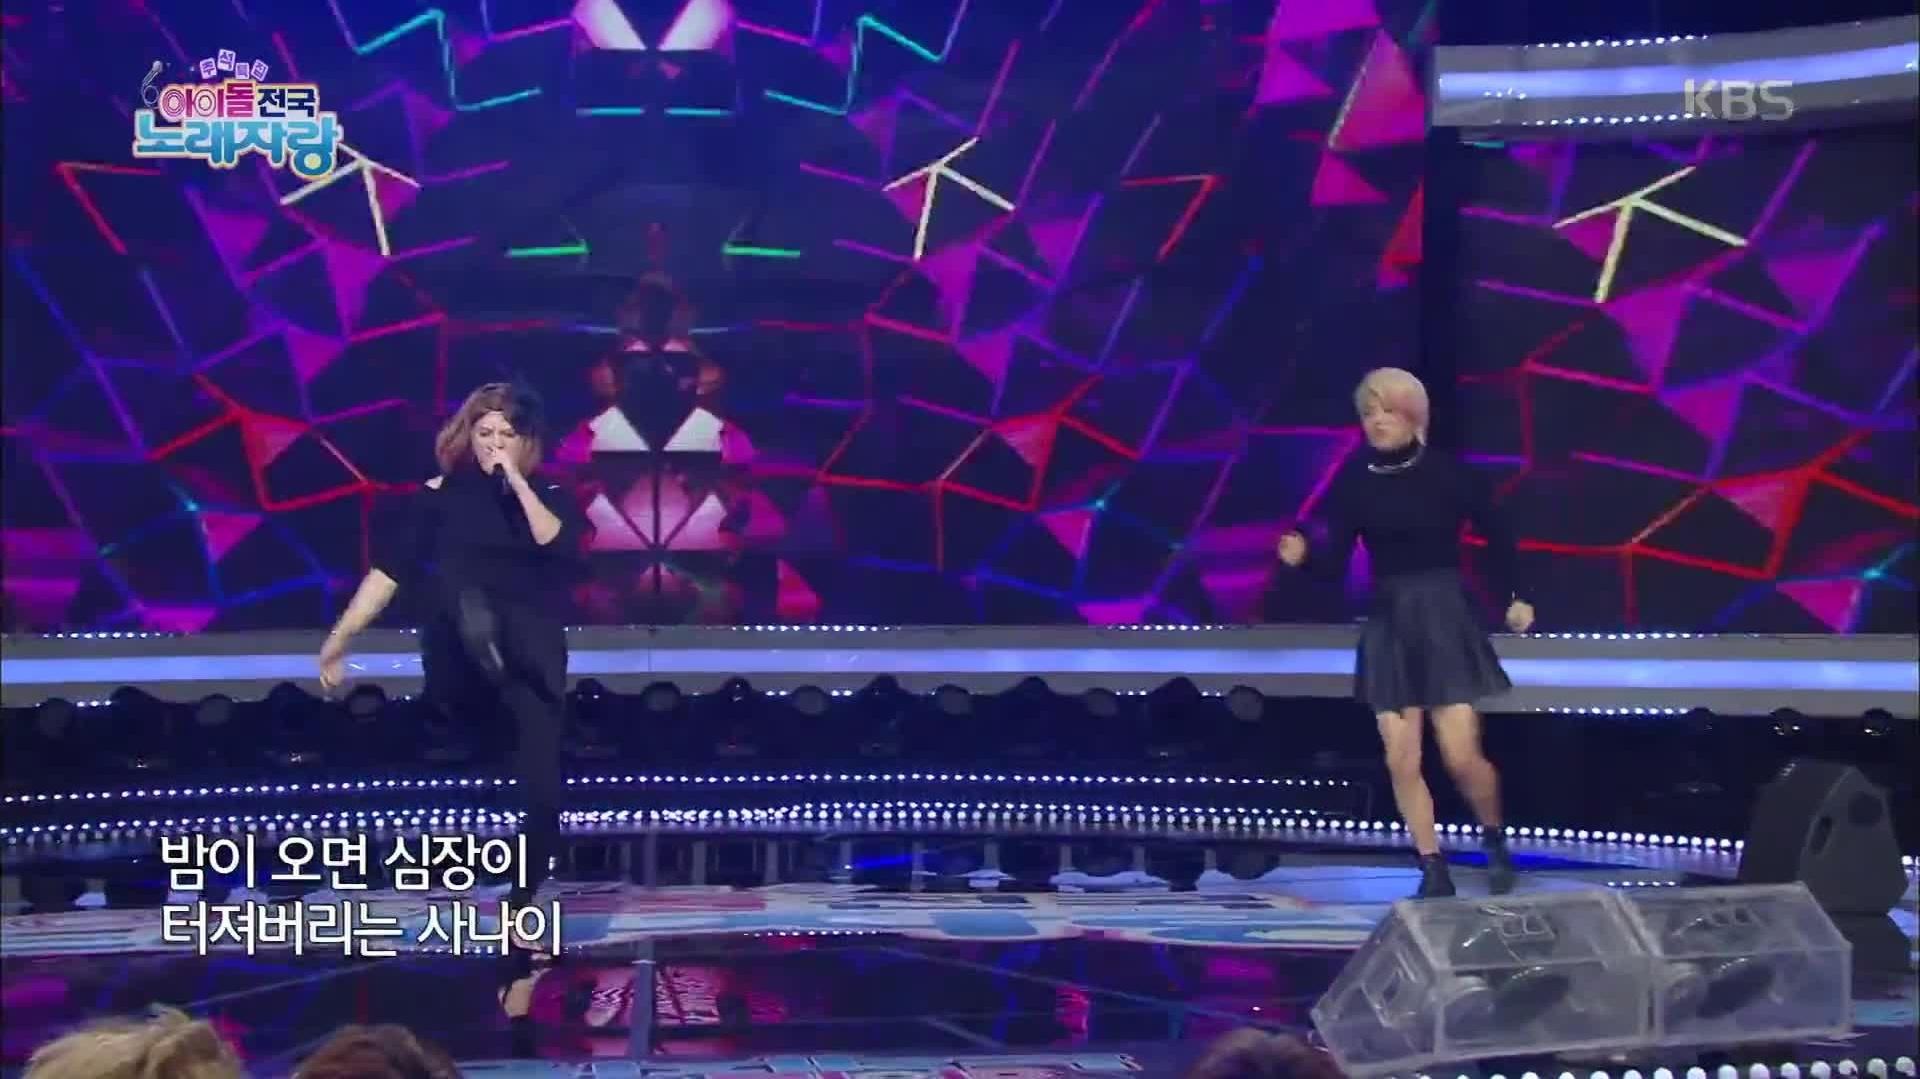 KangNam - 강남 스타일(江南Style) | KBS 秋夕特辑 偶像全国歌曲大赛 15/09/28 现场版